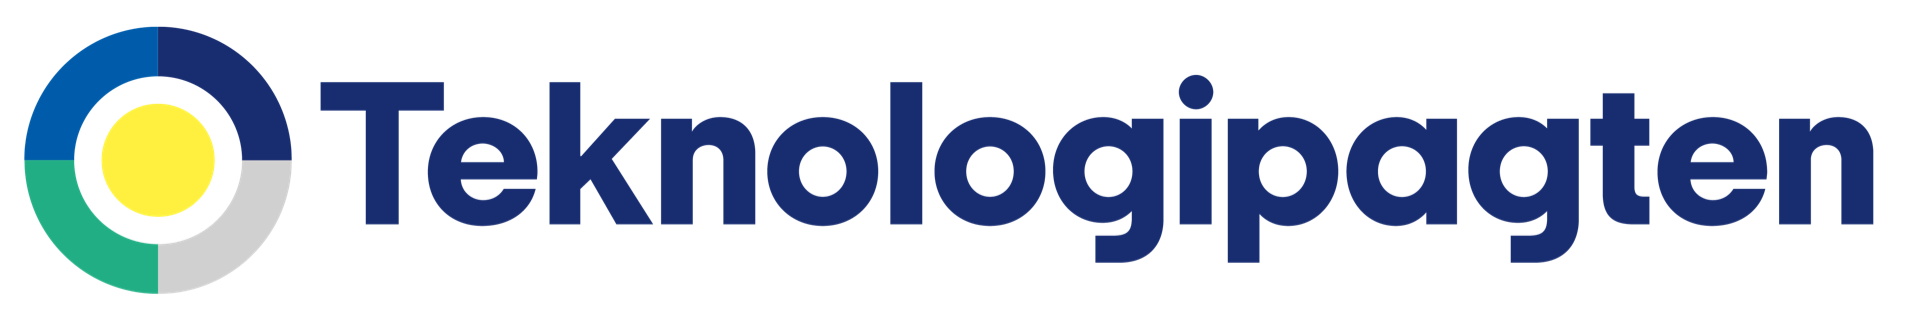 teknologipagten logo